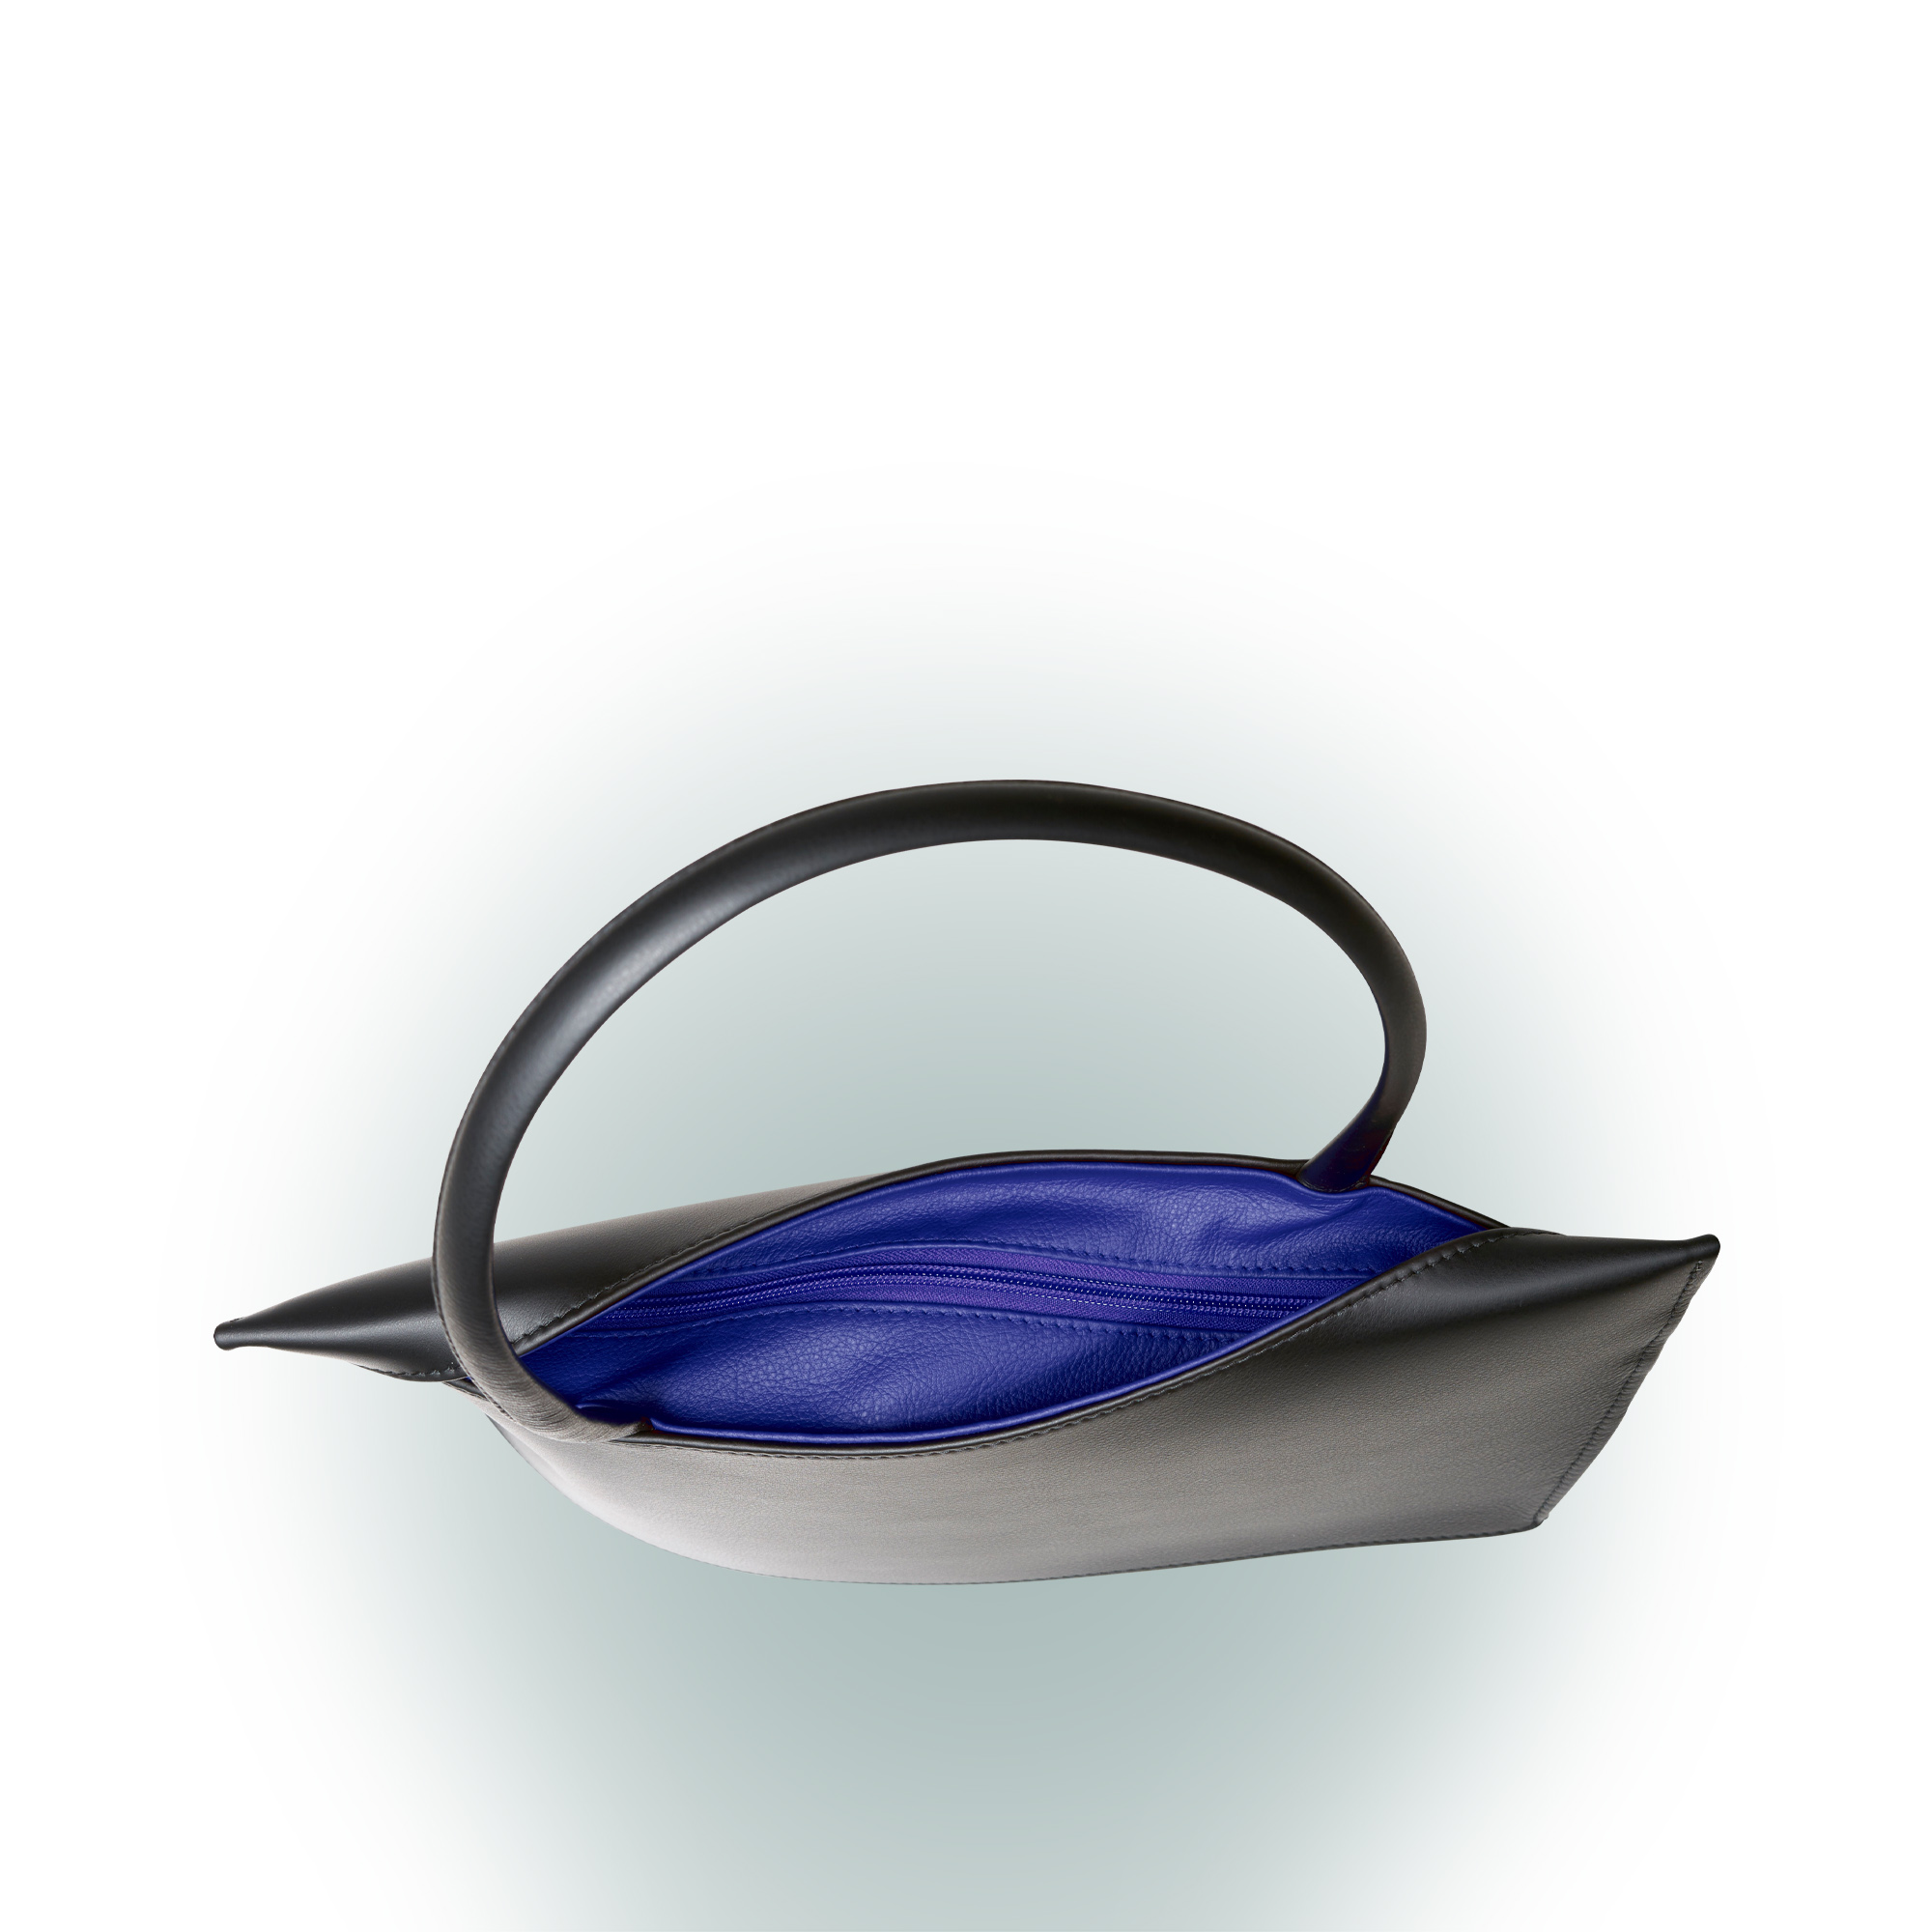 Olbrish Handtasche Wave, Nappaleder Schwarz-Royalblau, Größe M, Detailansicht Reißverschluss